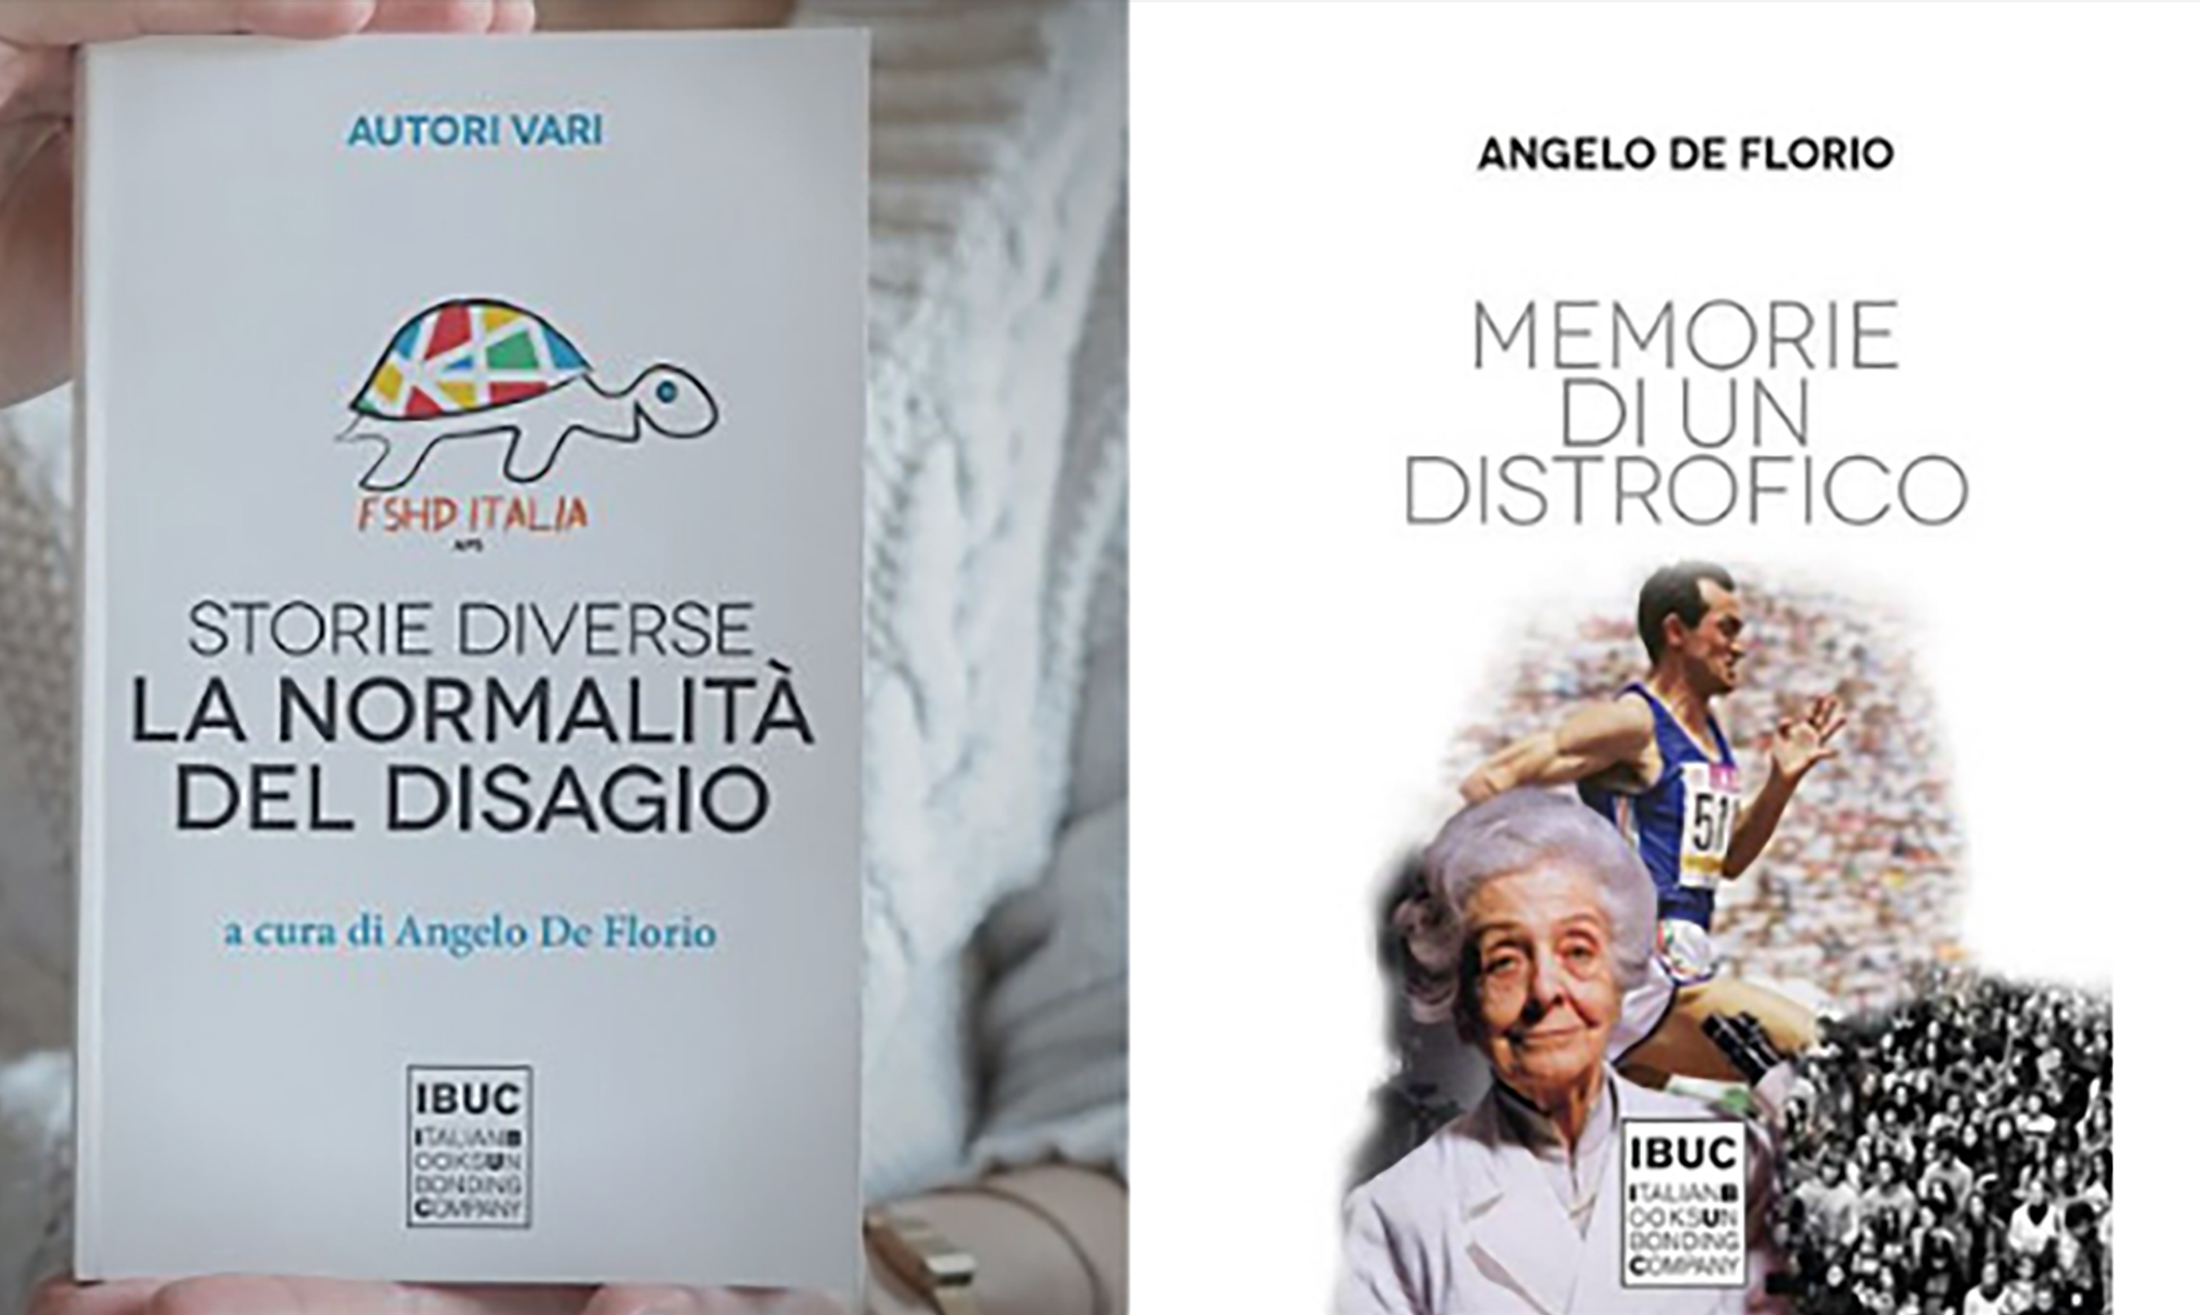 Le copertine dei due libri presentati a cura di FSHD Italia